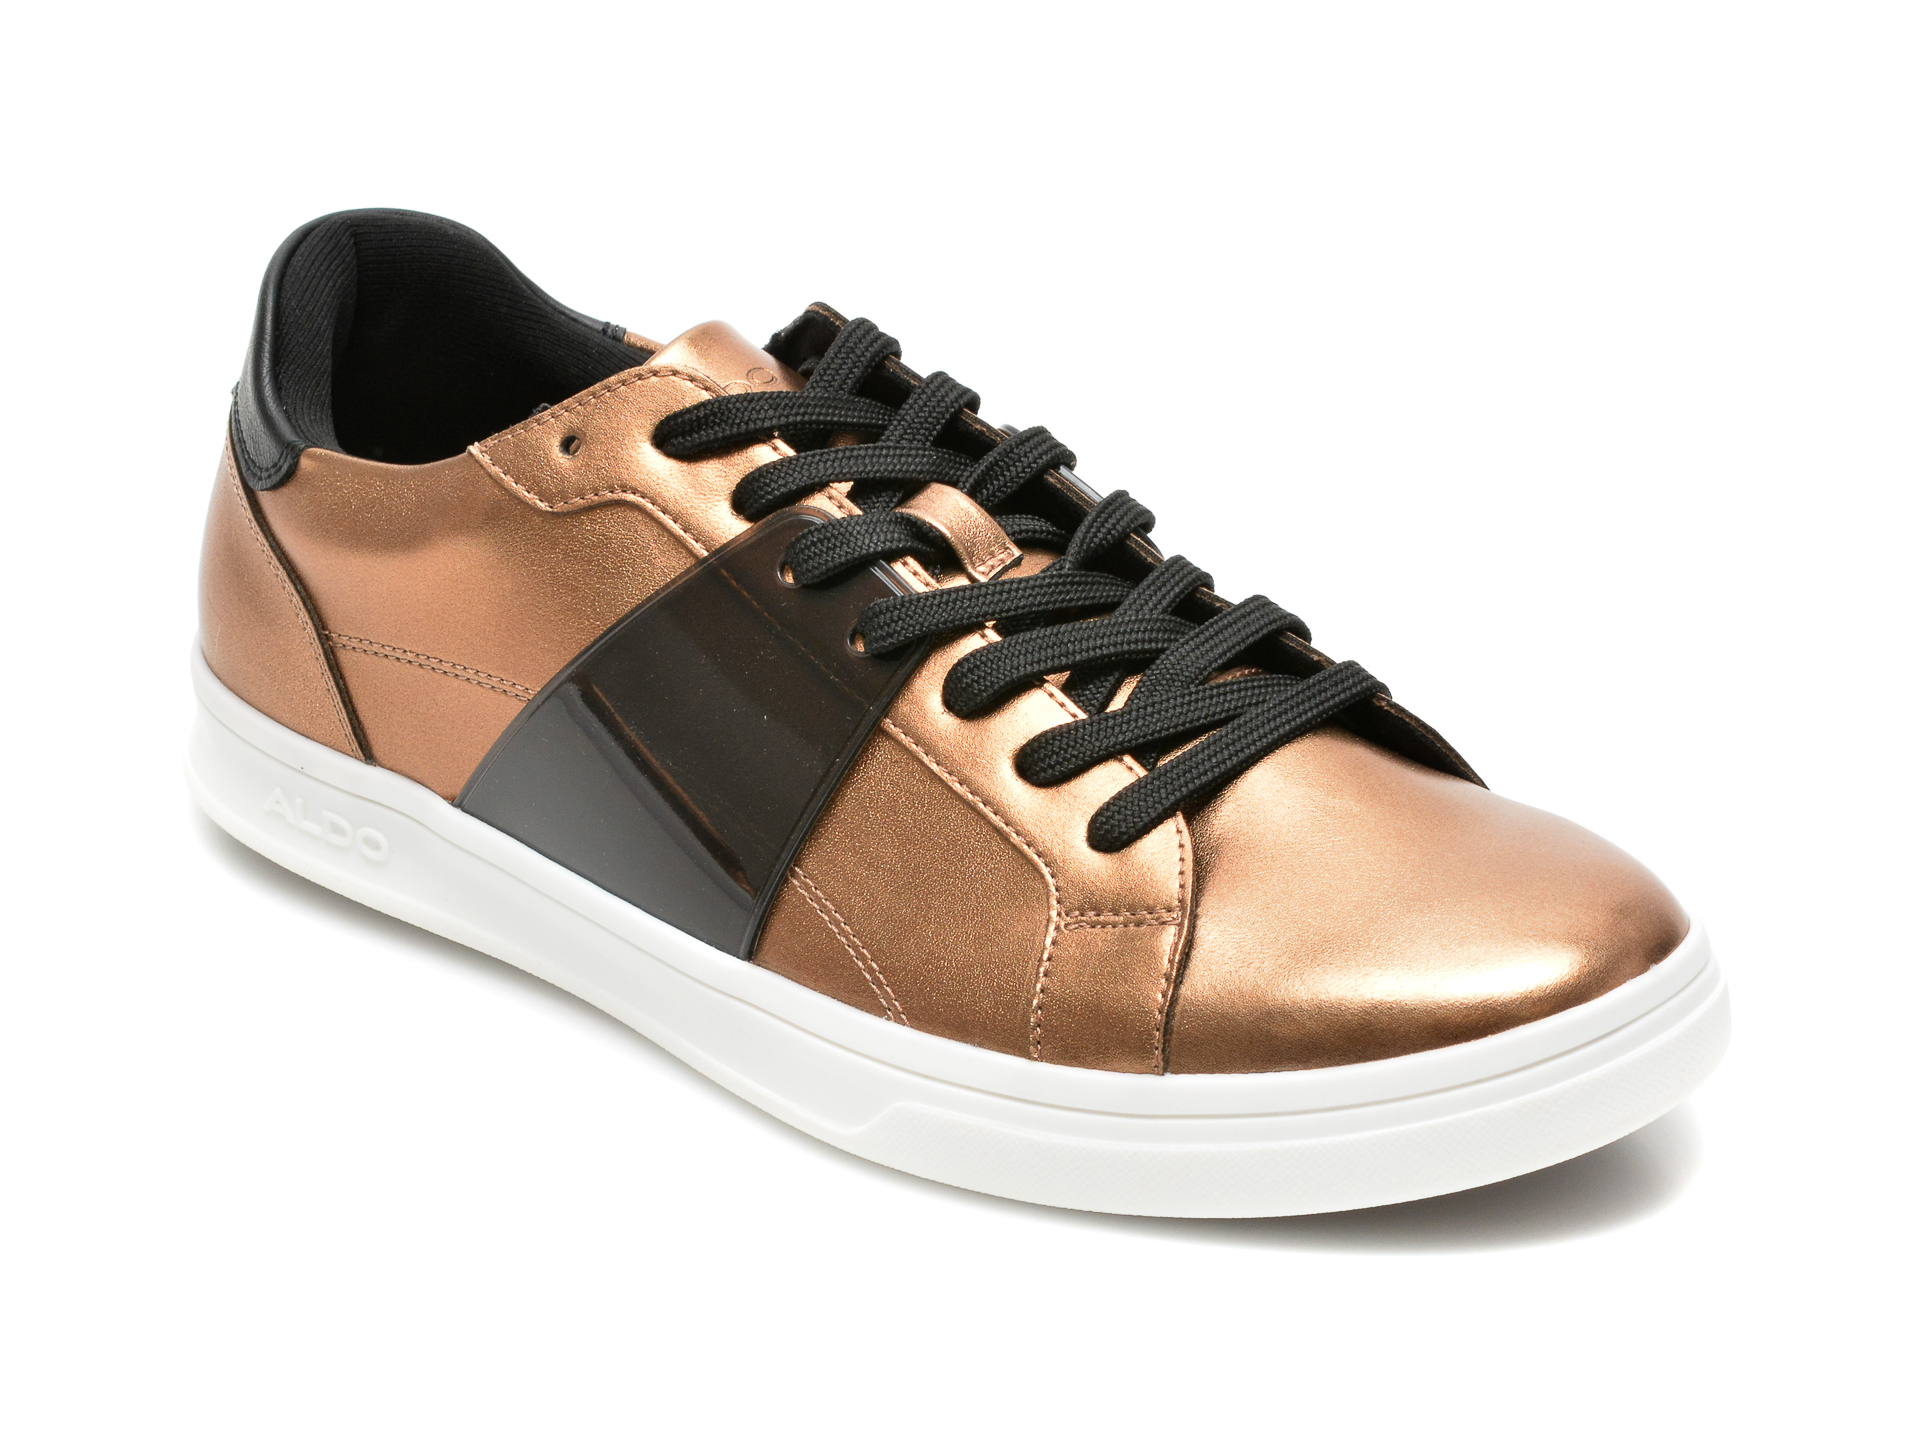 Pantofi ALDO bronz, 13265418, din piele ecologica Aldo imagine reduceri